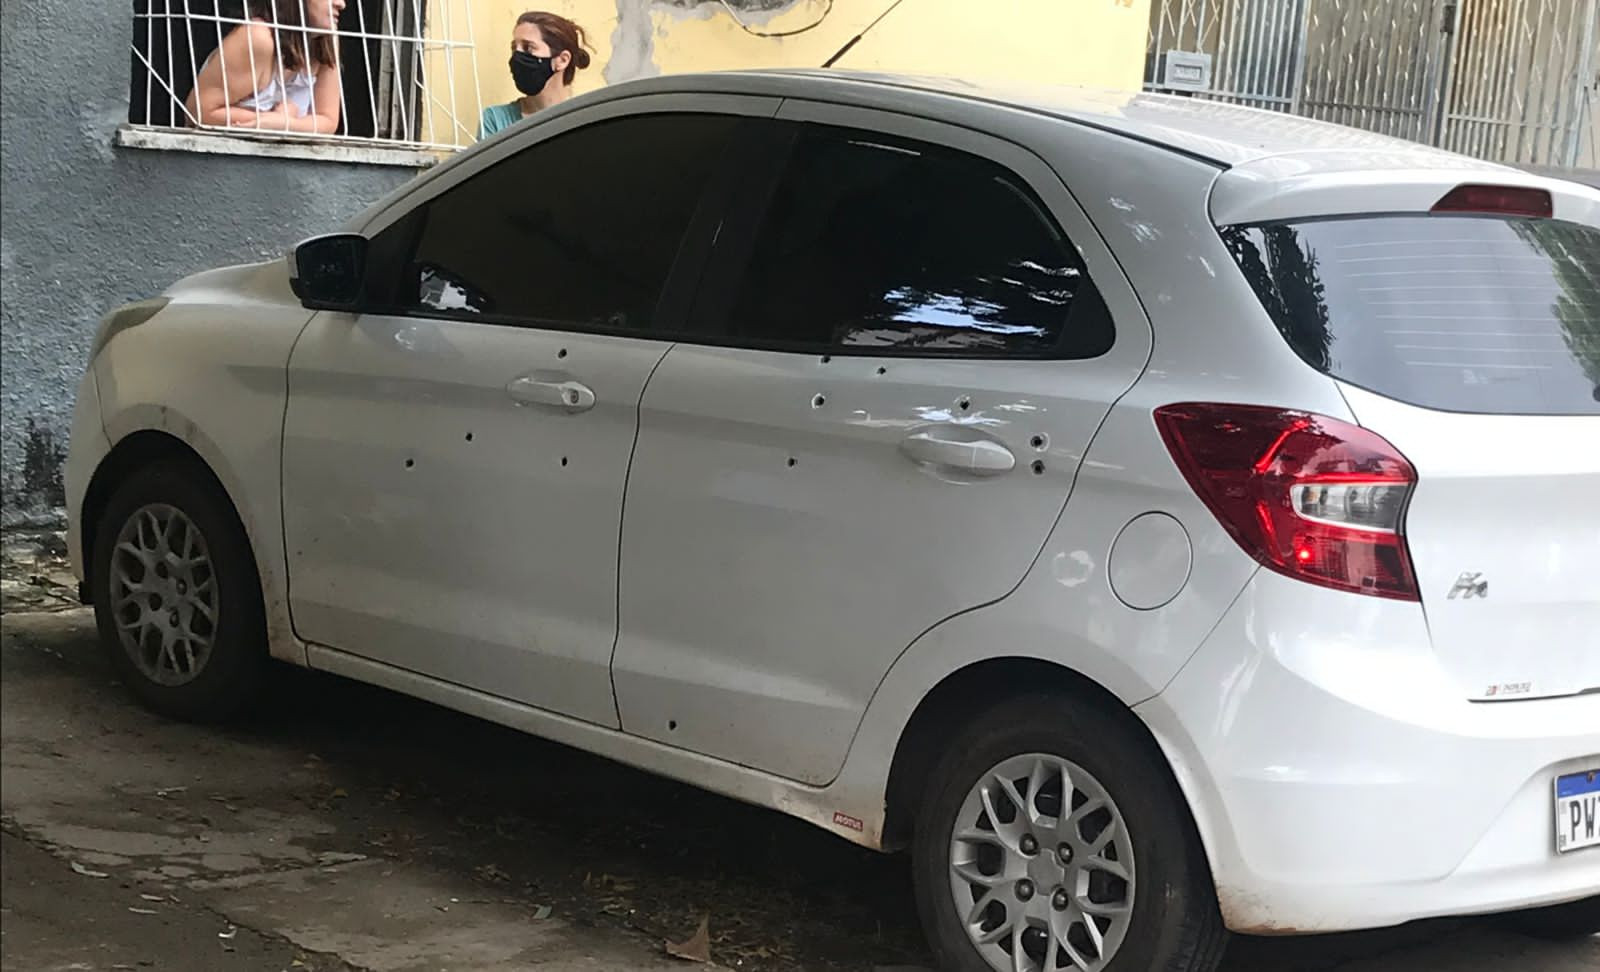 Carro é atingido com vários disparos de arma de fogo no bairro Morada Nova